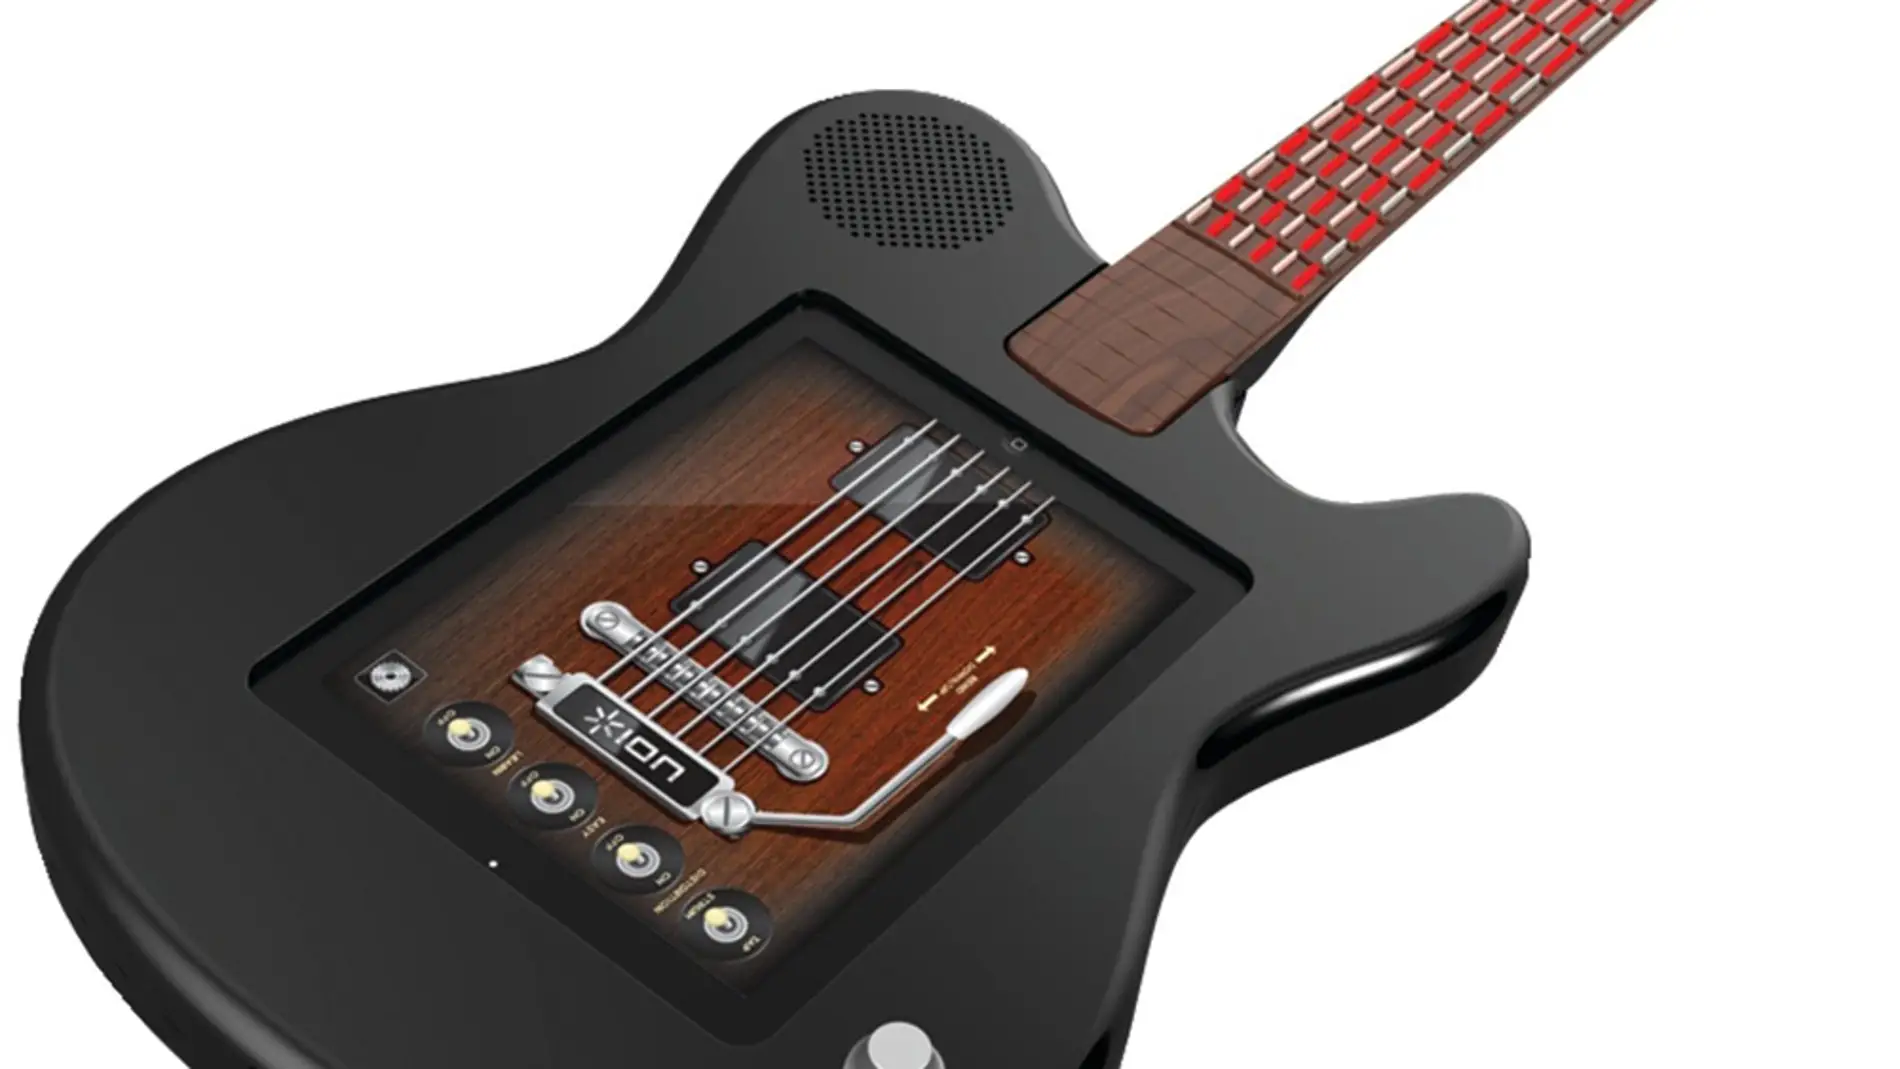 ION All-Star Guitar convierte tu iPad en un instrumento musical